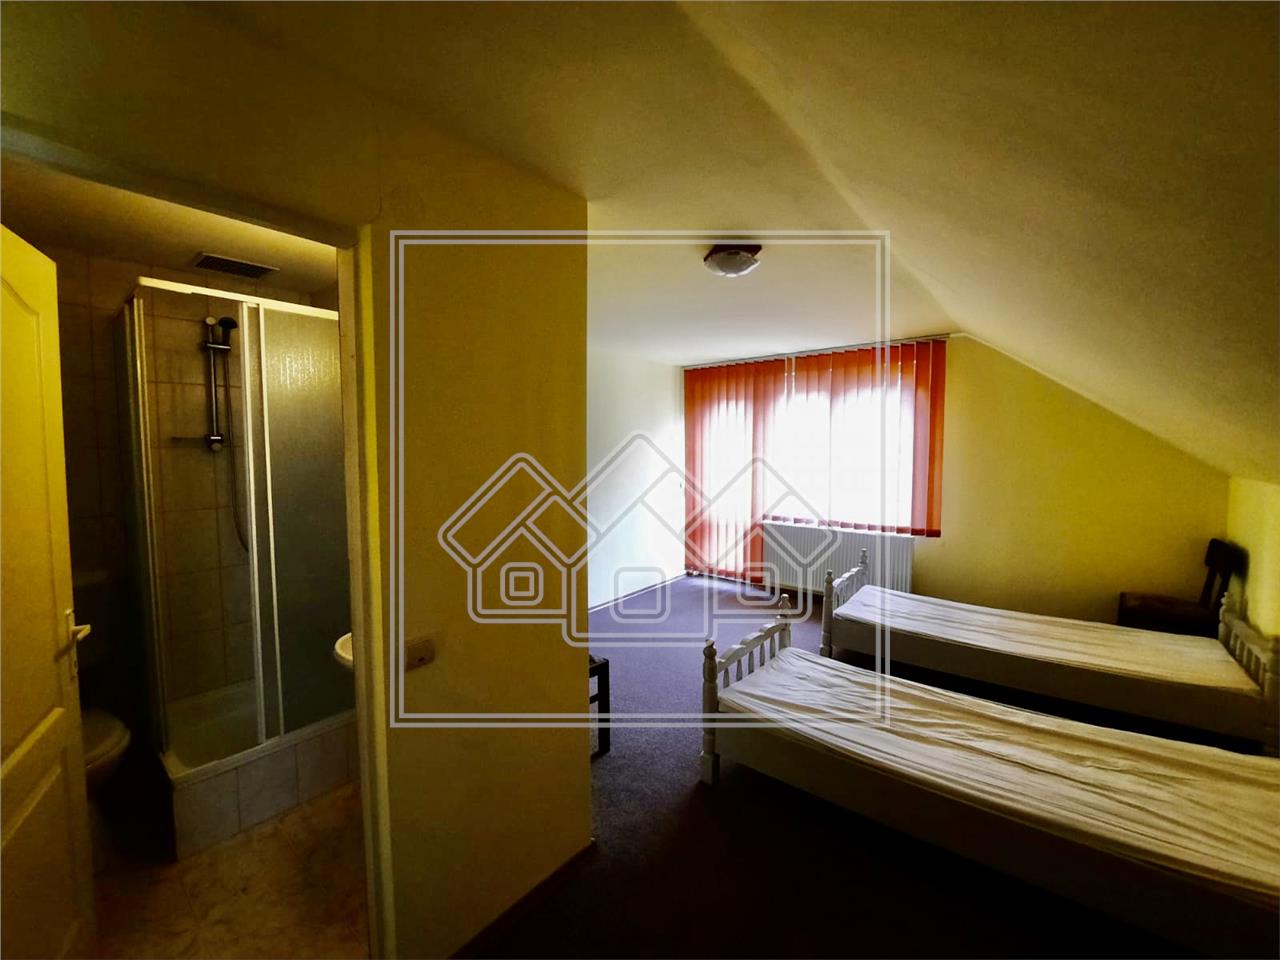 Pension for sale in Sibiu - Sura Mare - 5 rooms, 3 bathrooms, 3 balcon